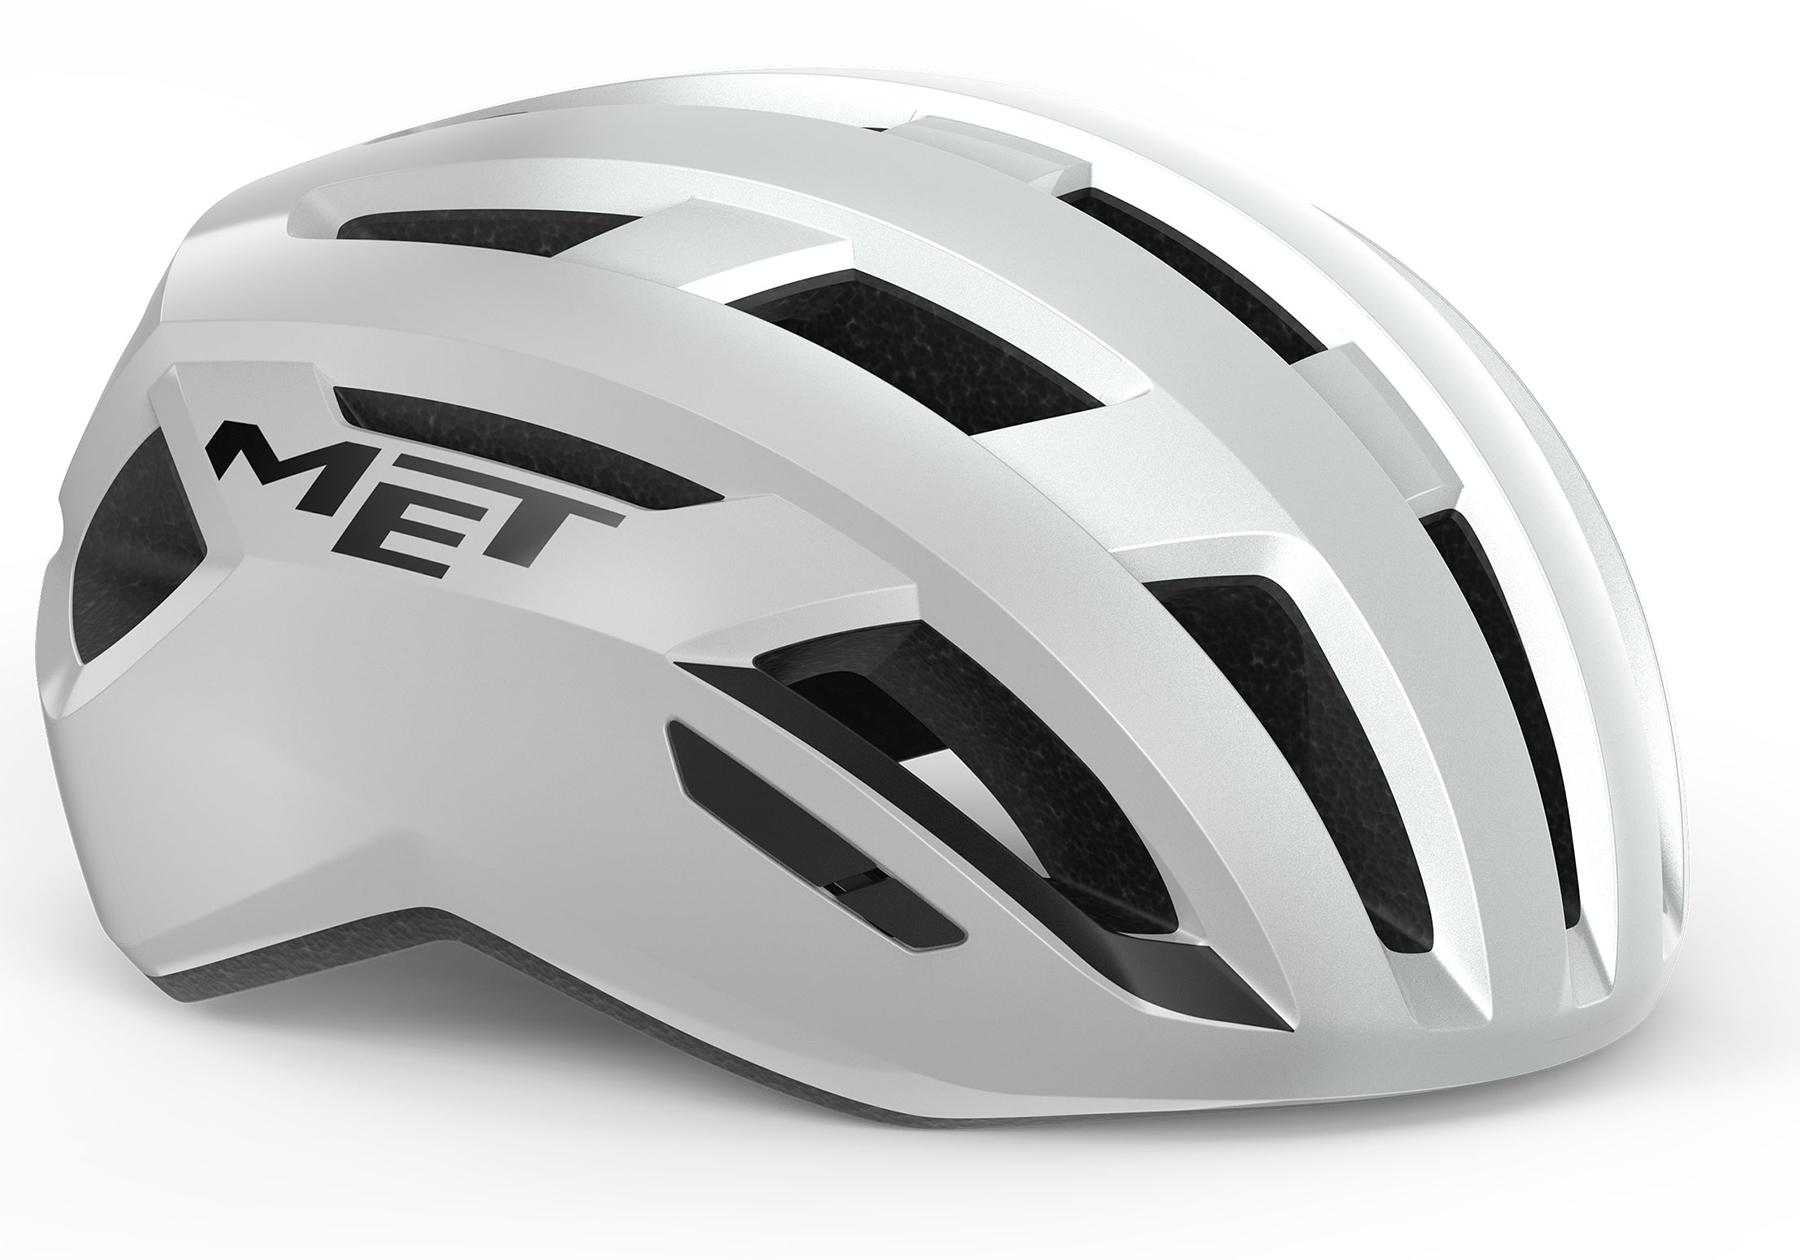 Met Vinci Road Helmet (mips) - White/silver